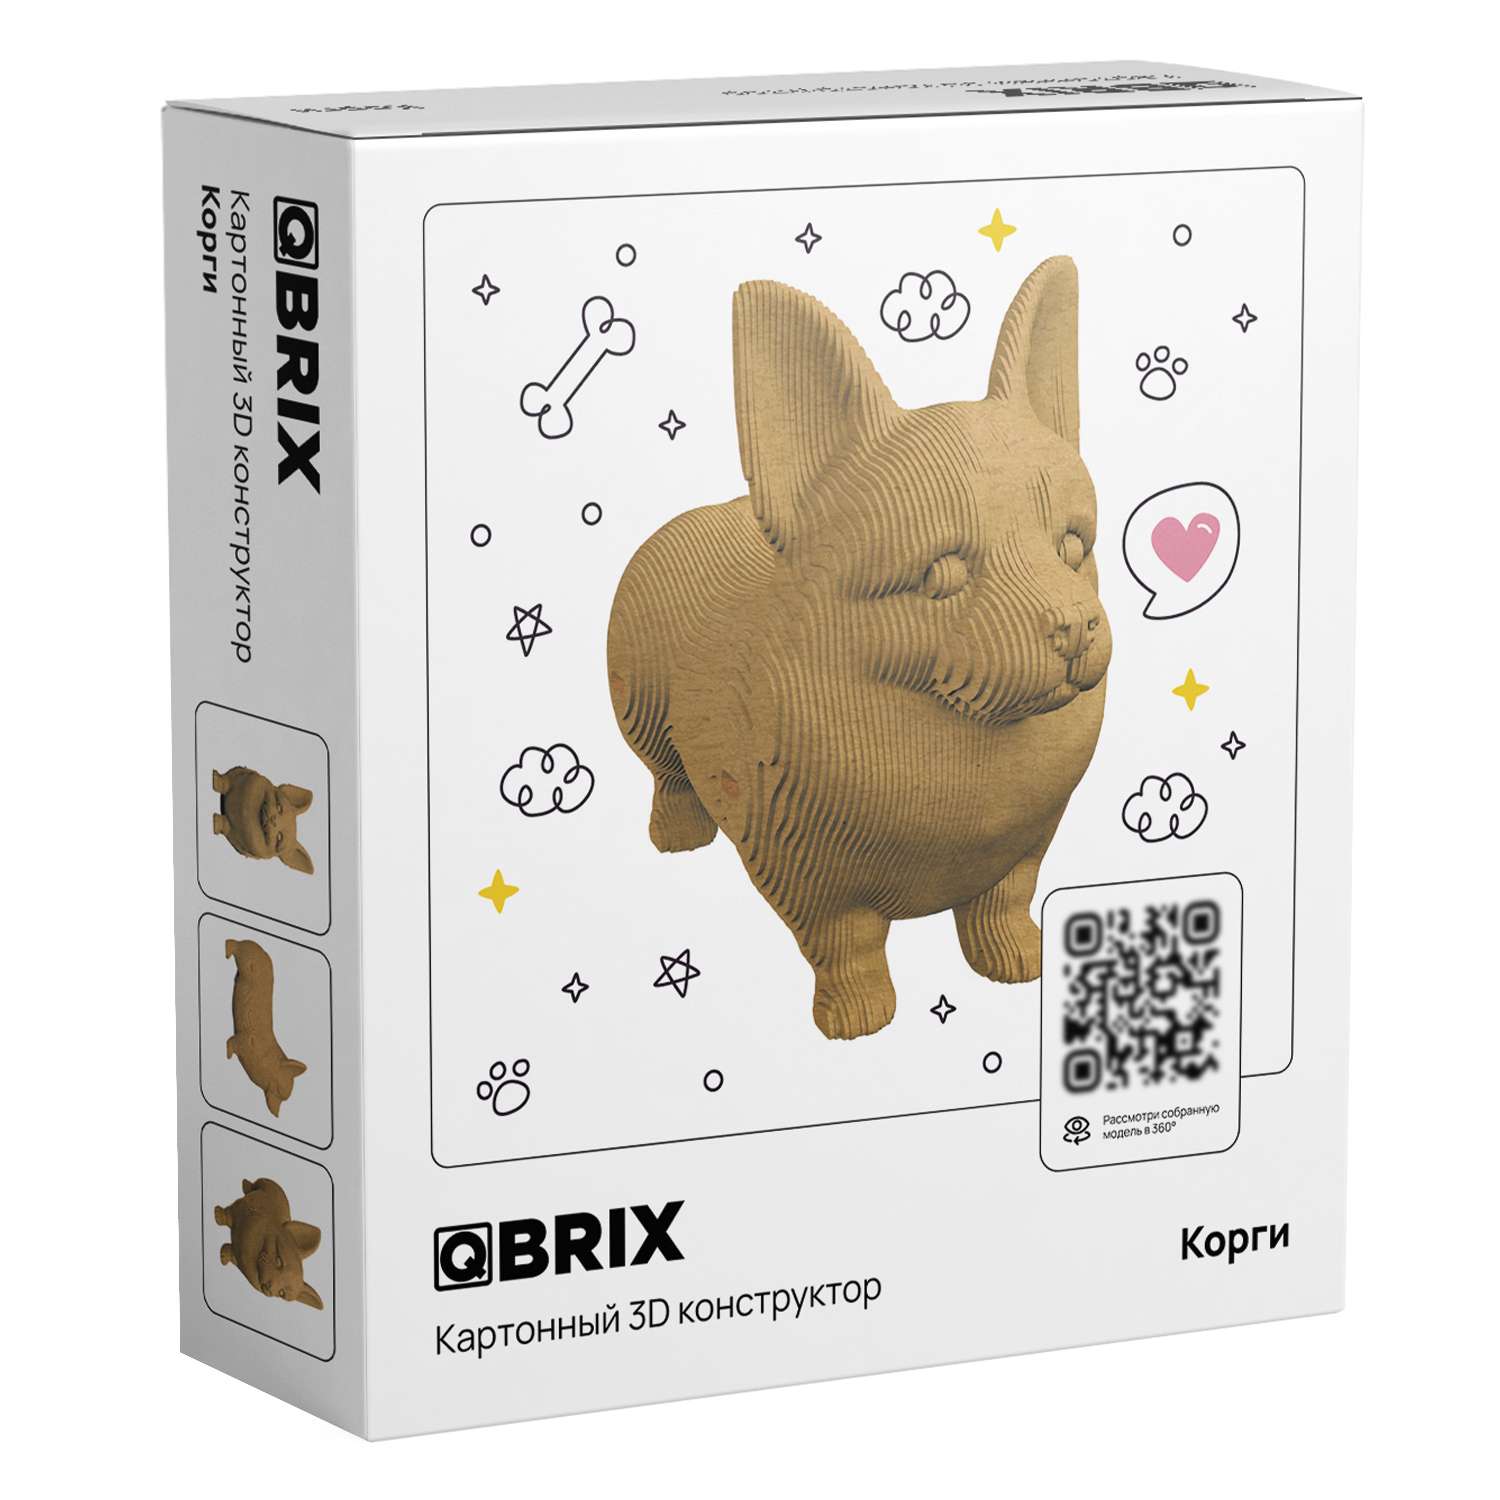 Конструктор QBRIX 3D картонный Корги 20036 20036 - фото 1